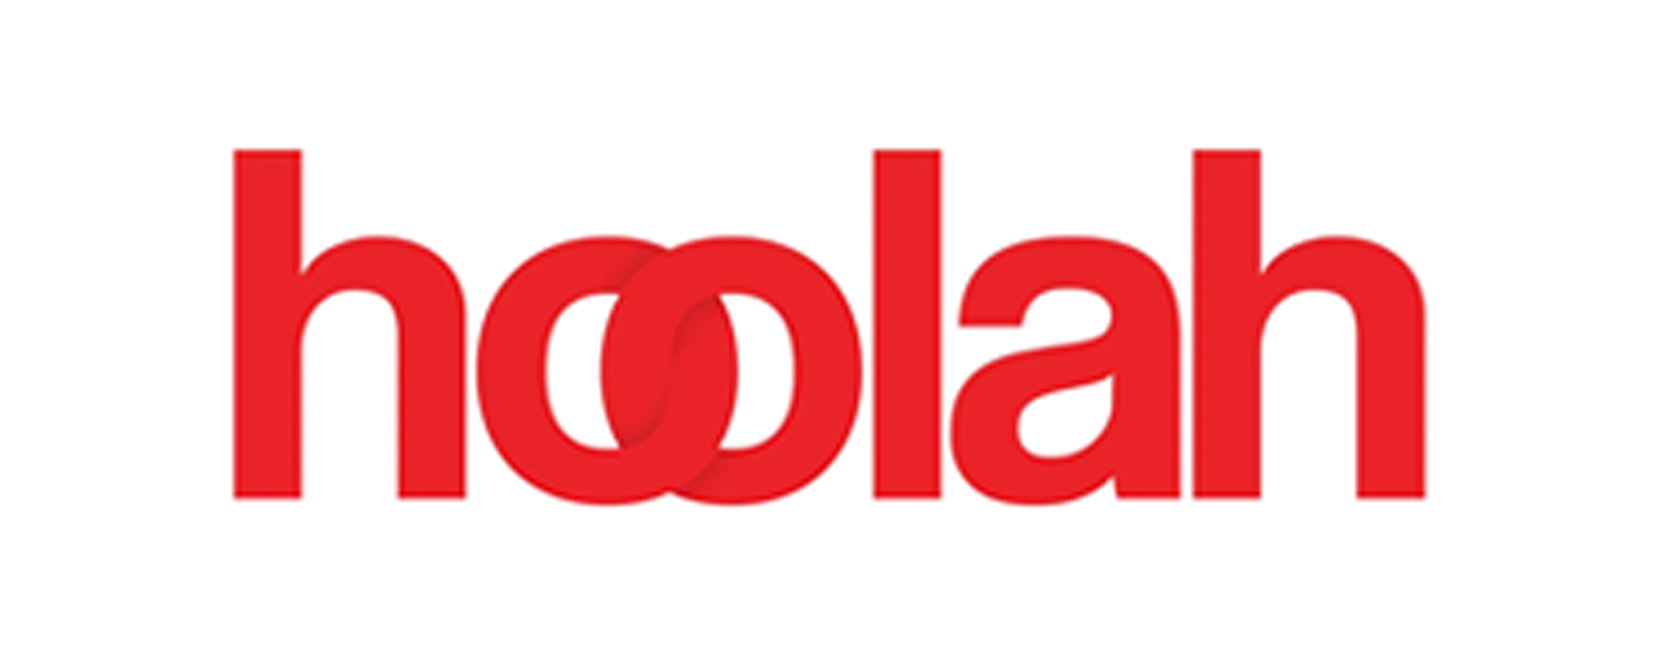 Hoolah logo